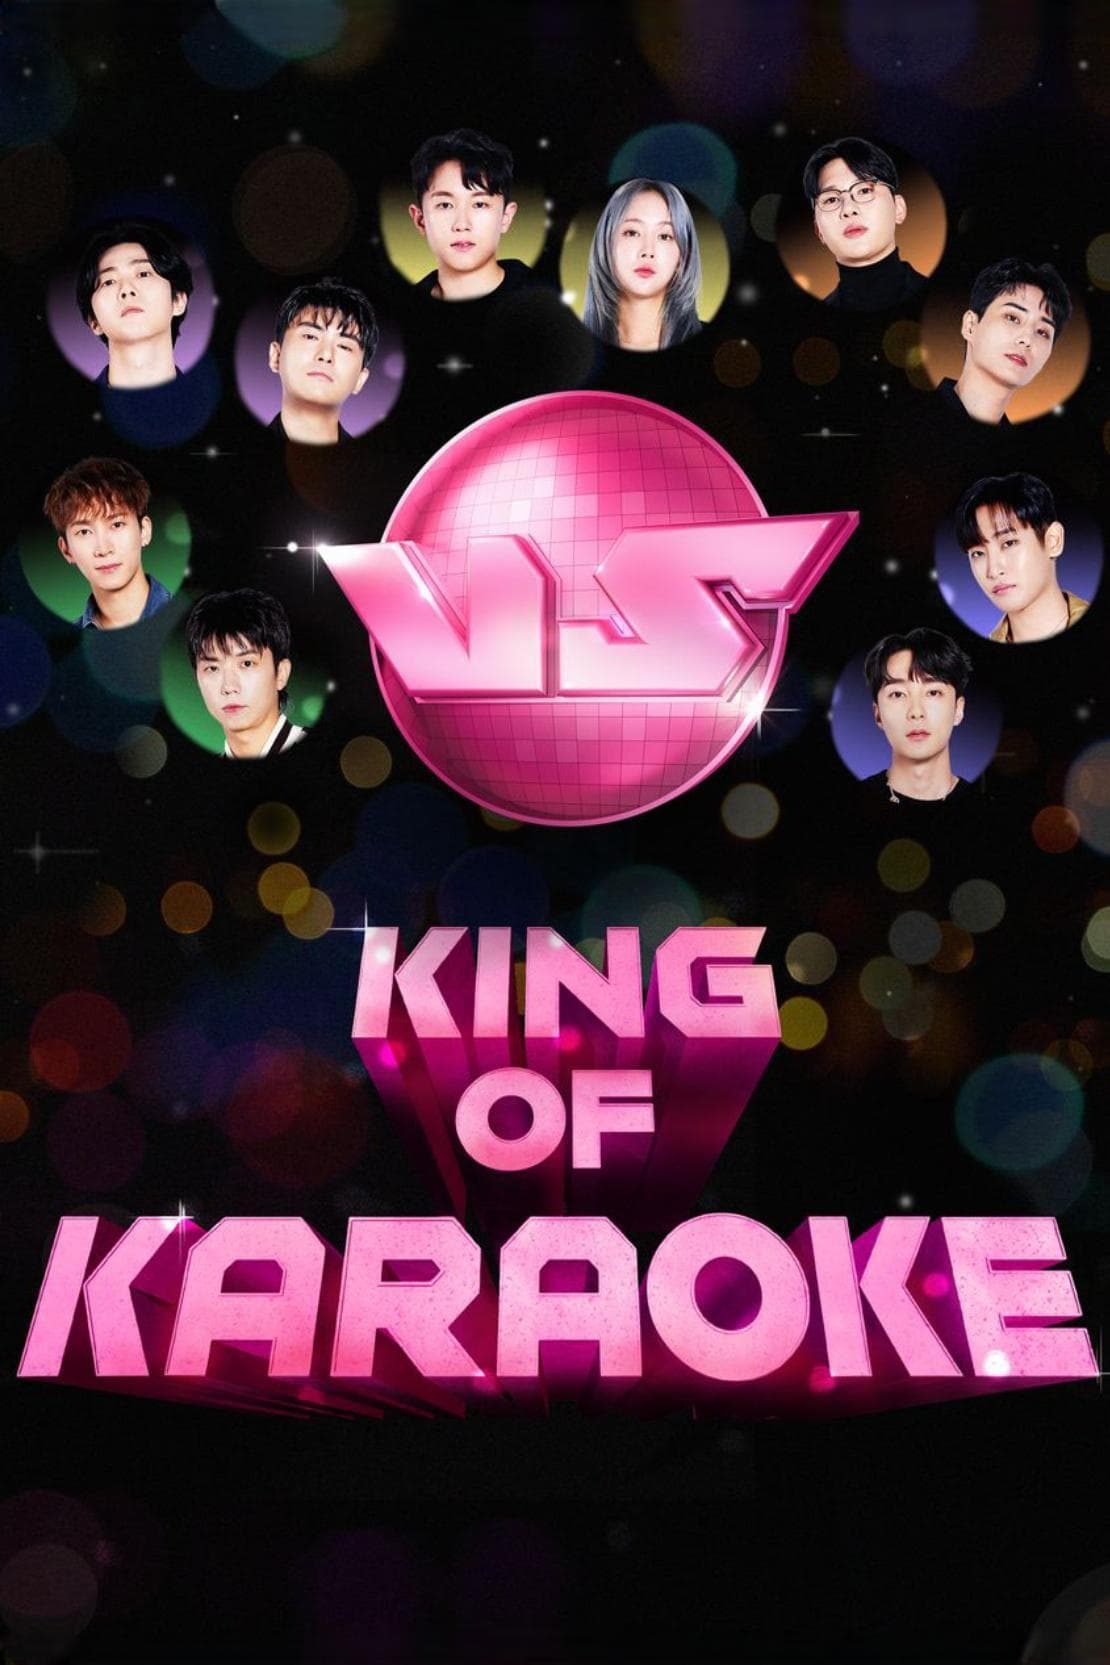 King of Karaoke: VS